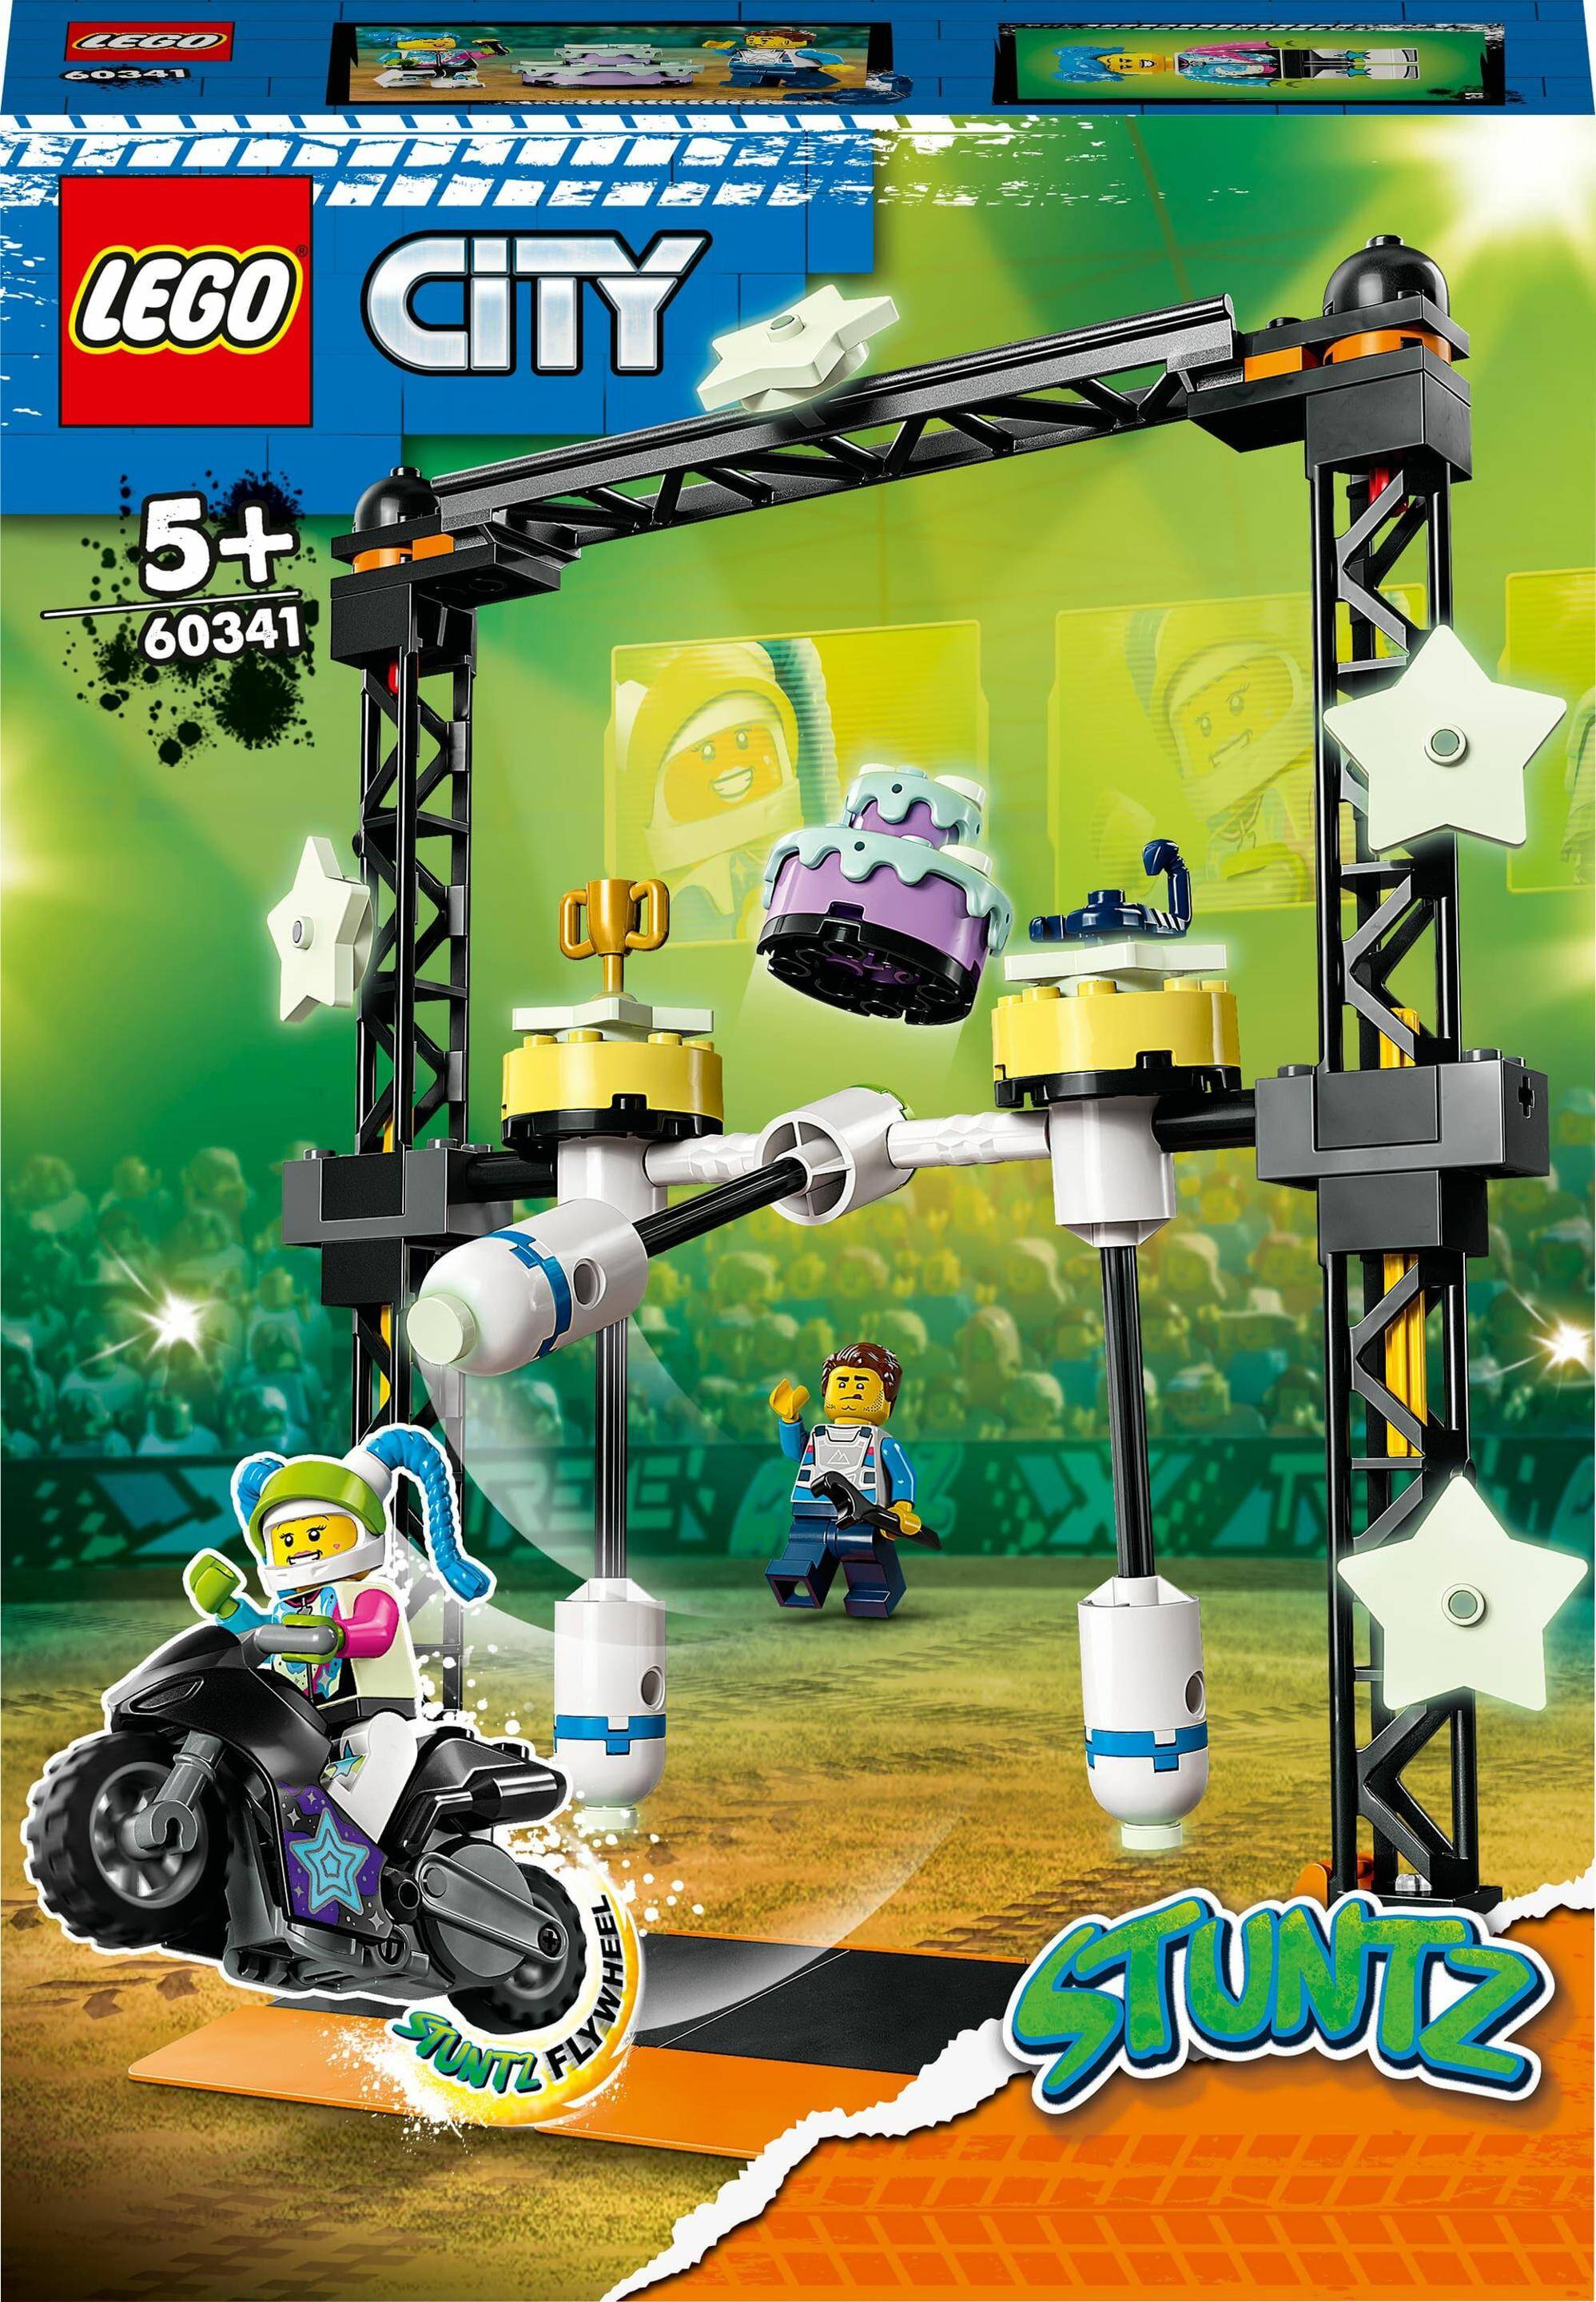 Lego City 60341 Wyzwanie kaskaderskie: